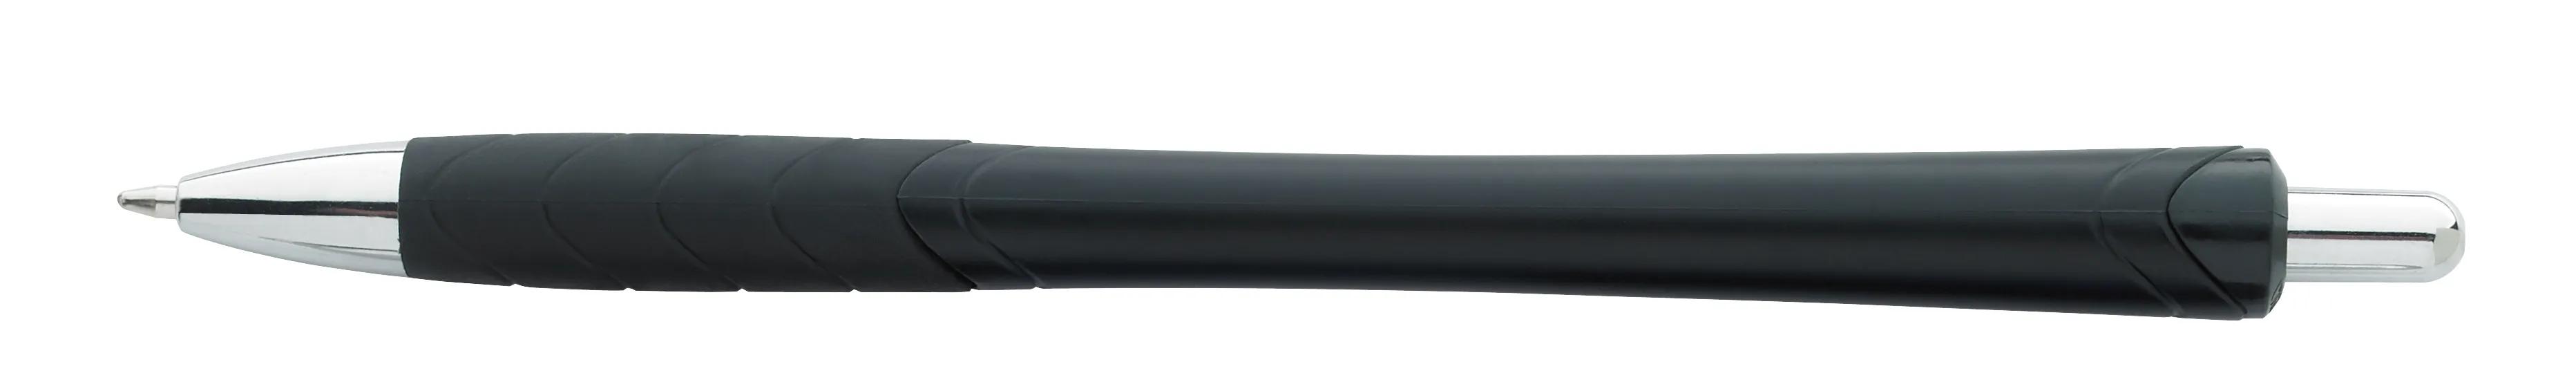 Metallic Slim Pen 2 of 31